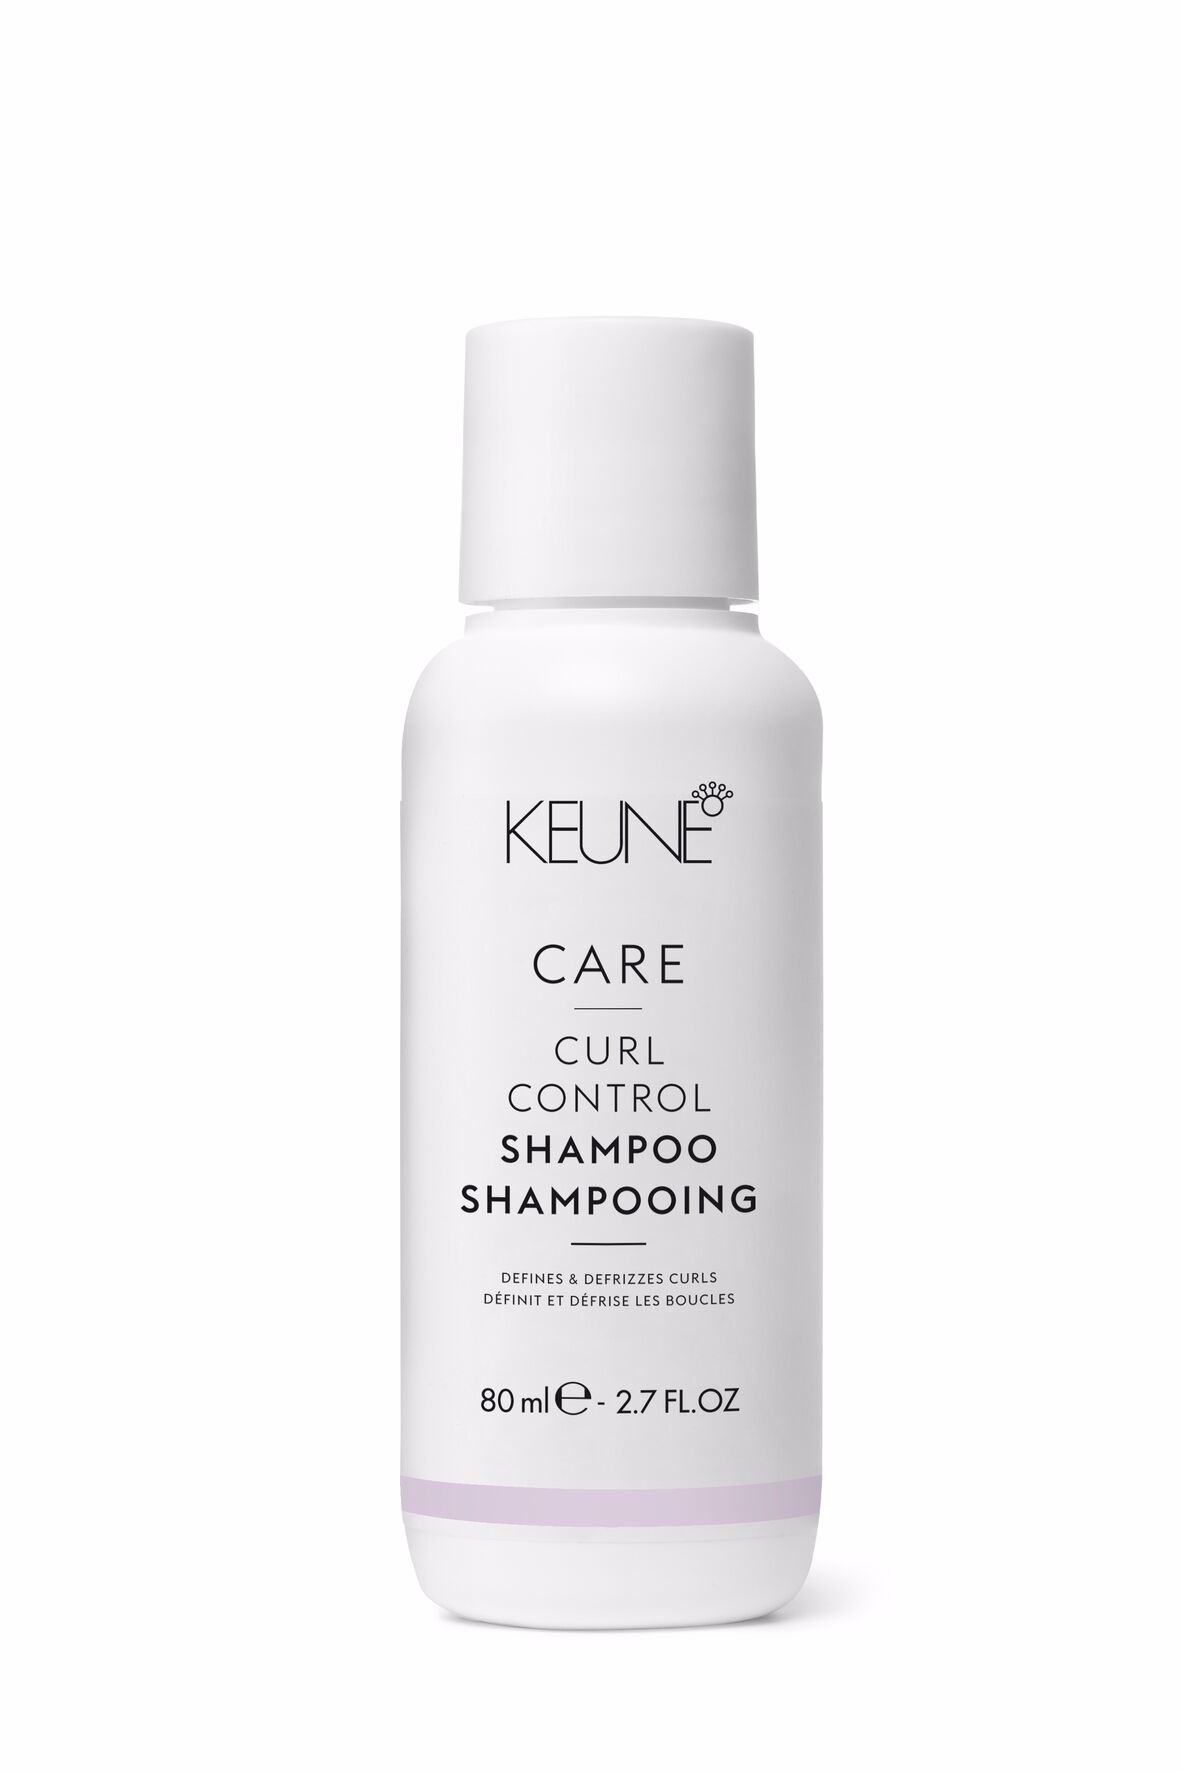 Découvrez le meilleur shampooing pour cheveux bouclés avec notre CARE Curl Control Shampoo. Spécialement conçu pour les cheveux bouclés. Obtenez votre Shampooing sur keune.ch.